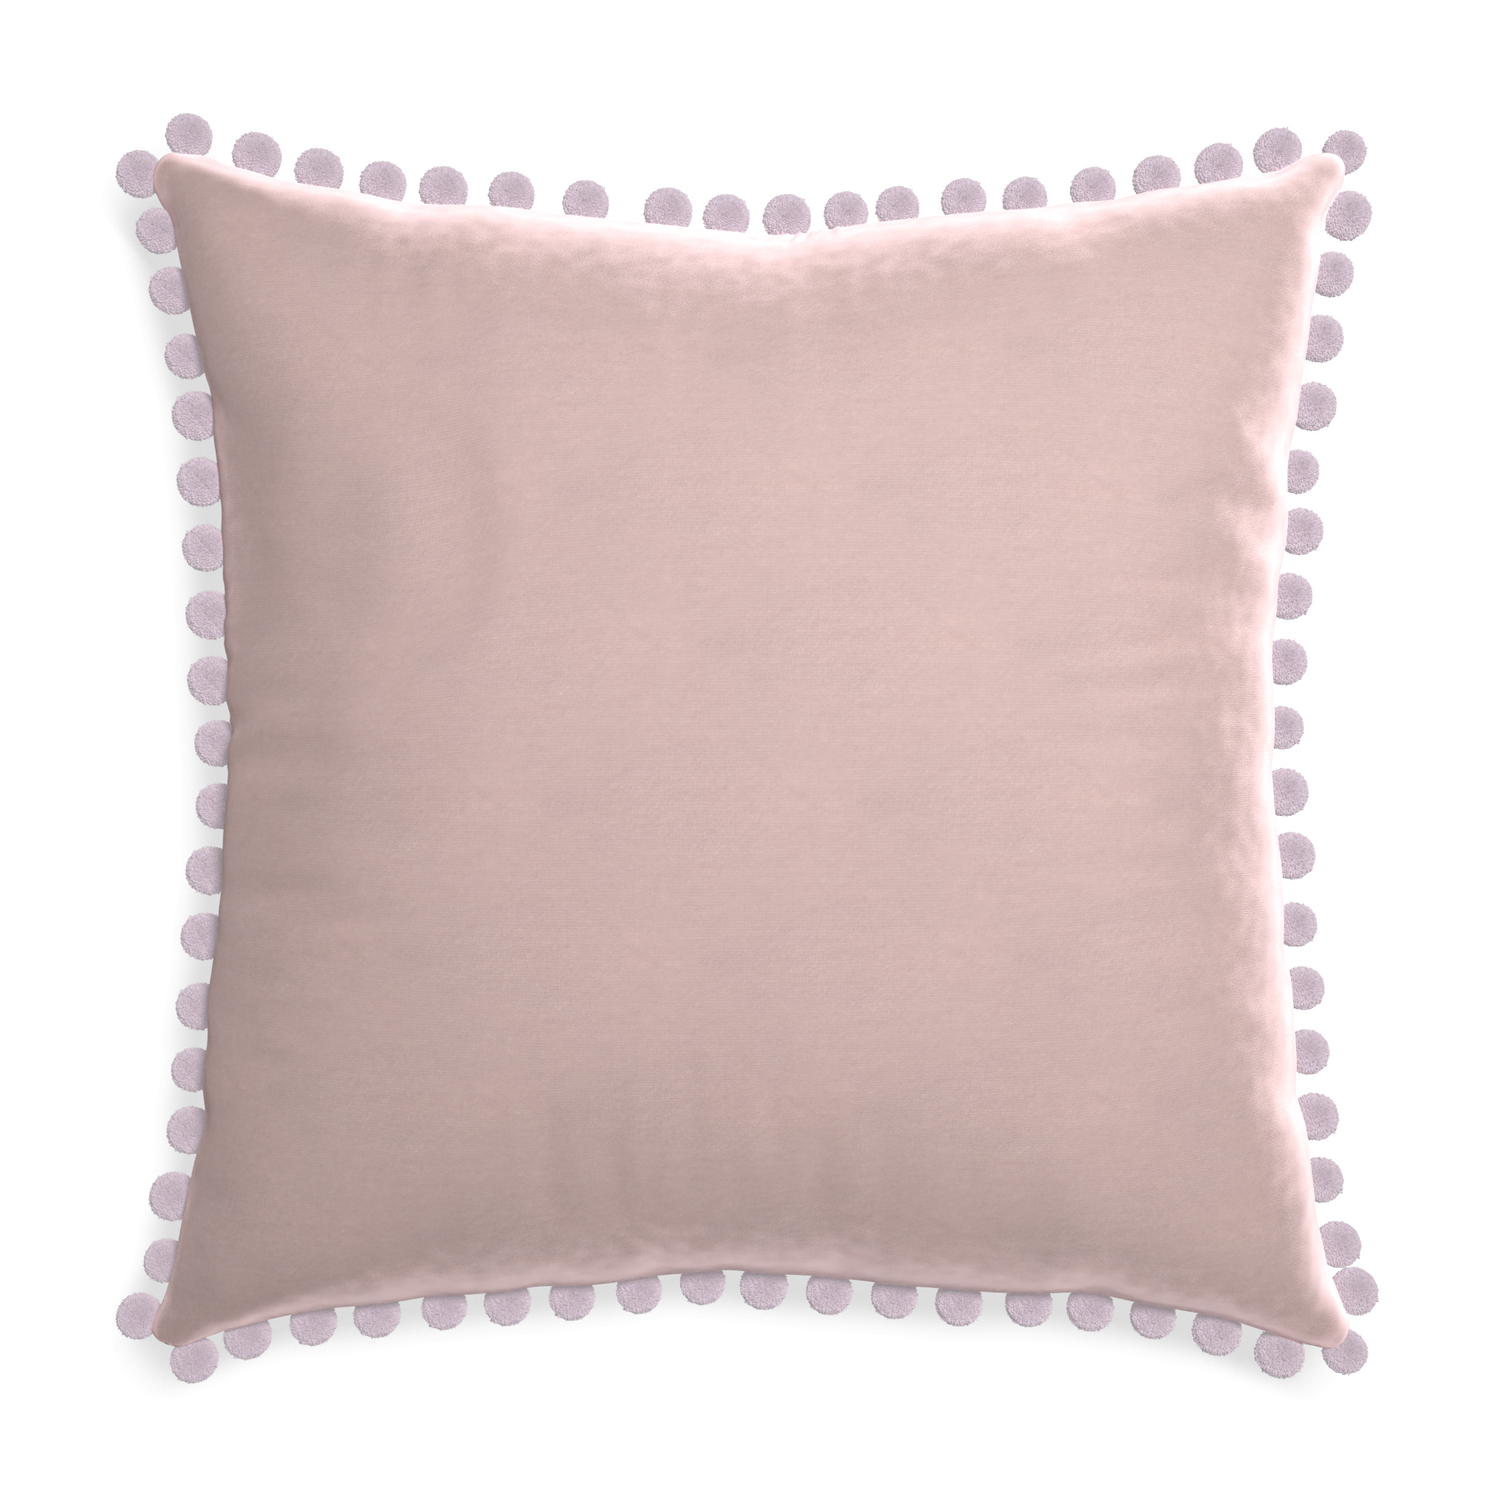 Euro-sham rose velvet custom pillow with l on white background